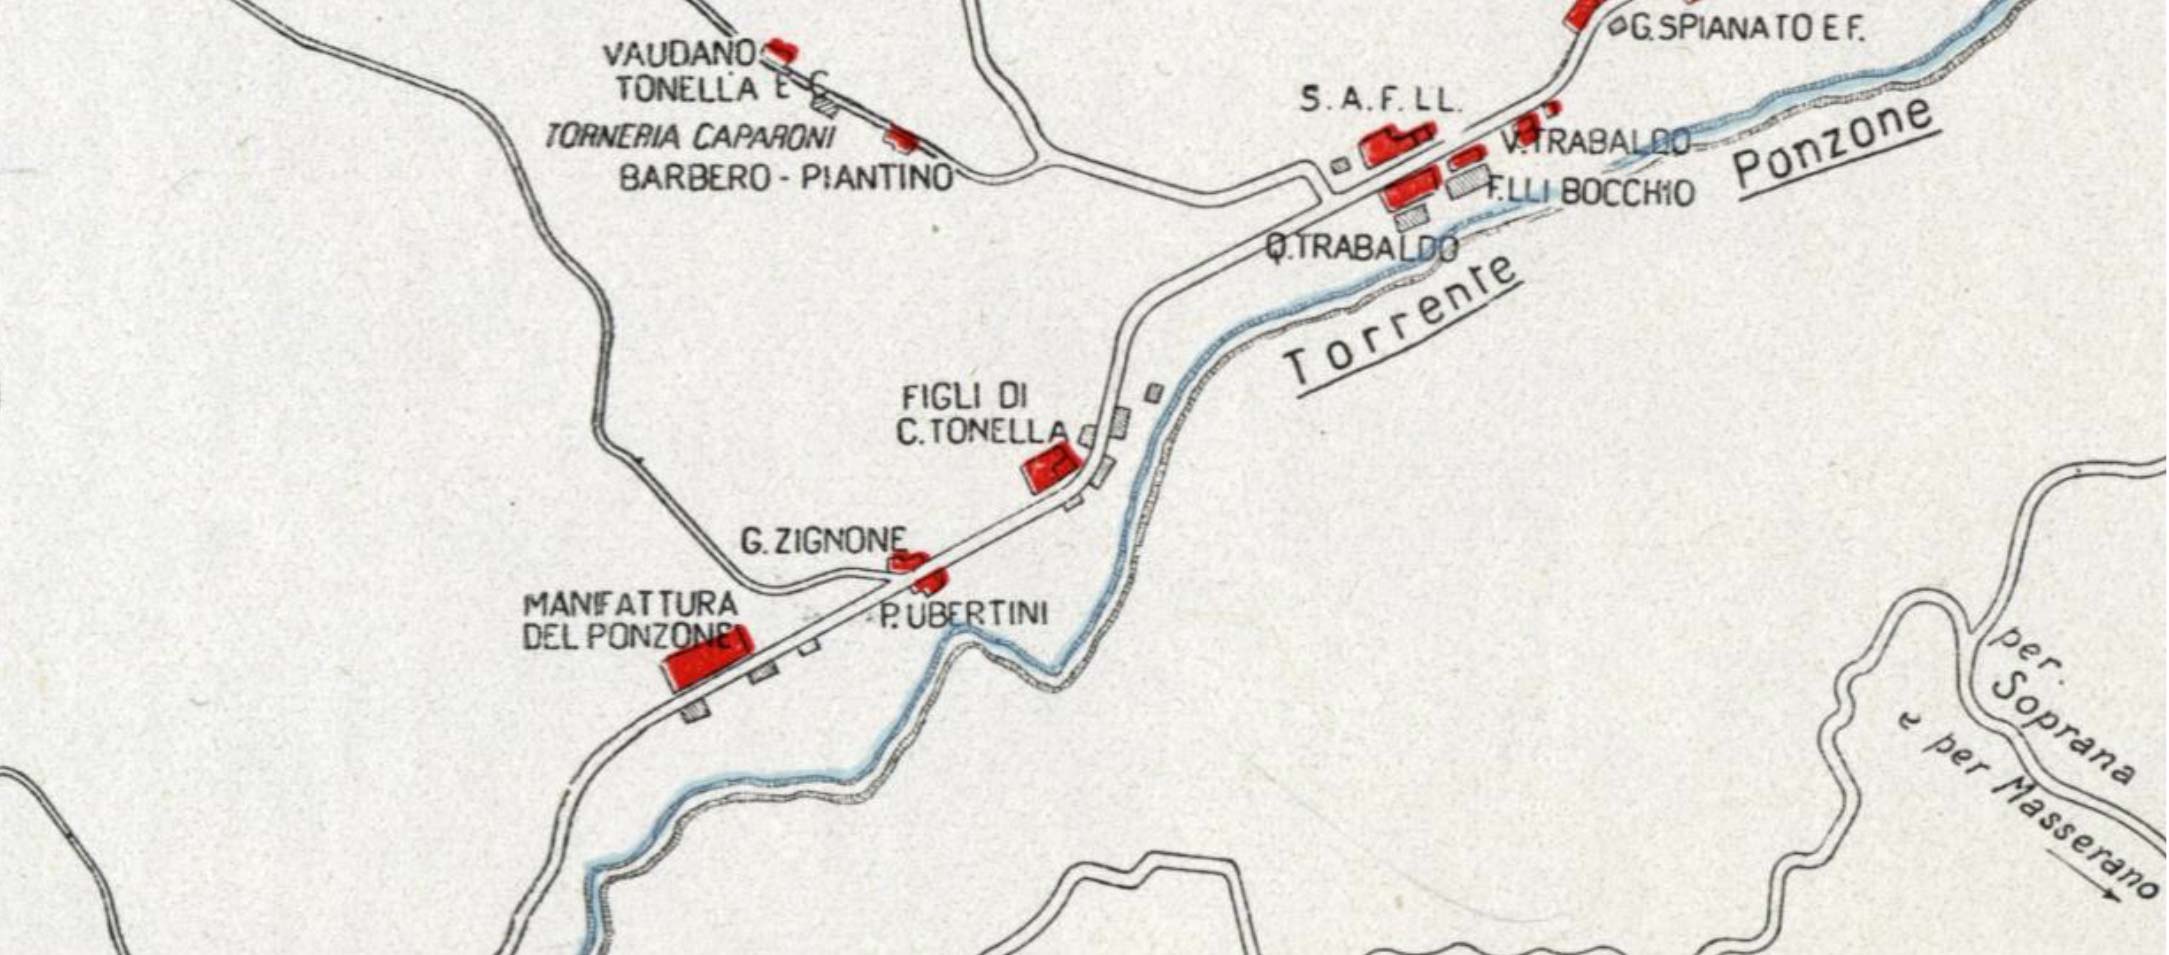 Photo représentant une carte des établissements à proximité du torrent Ponzone, tirée de l'“Annuario della Laniera” de 1934.